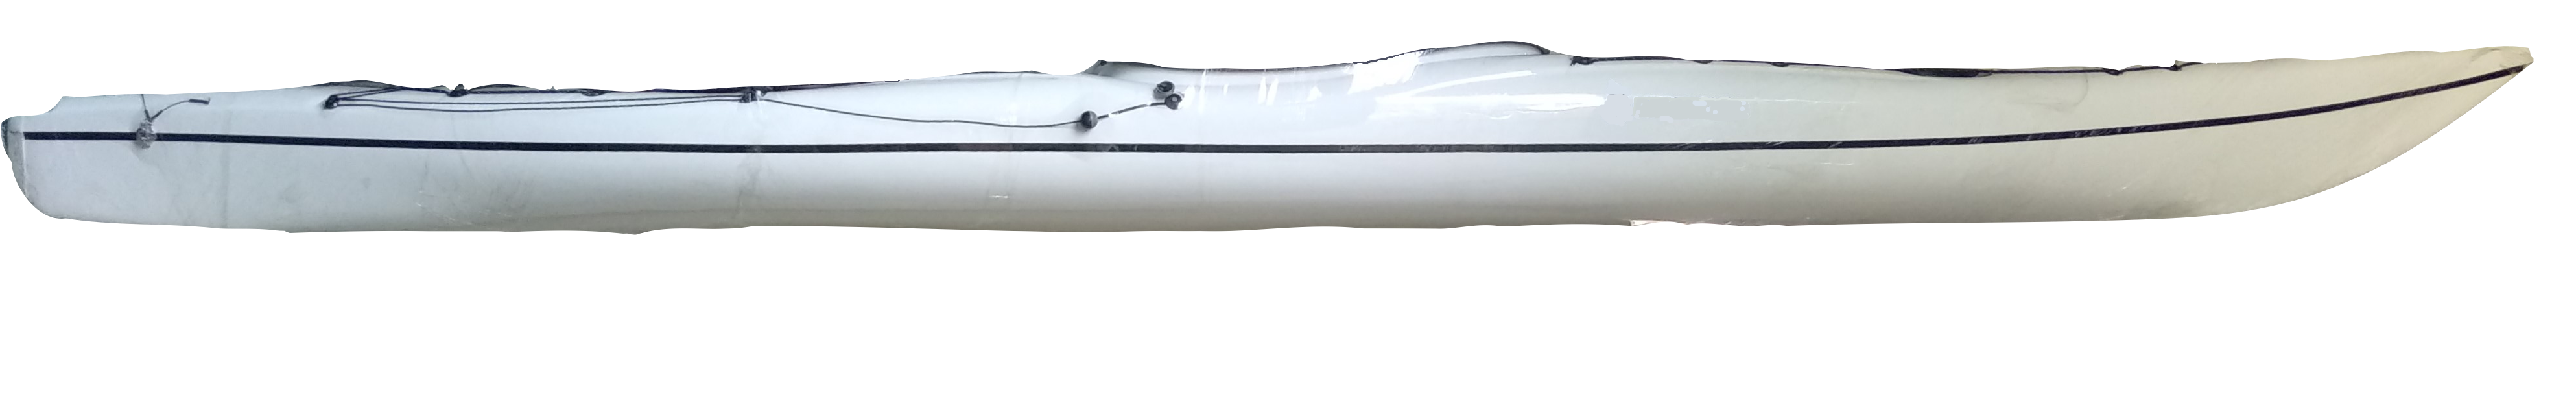 Seajack-16 ABS – White S